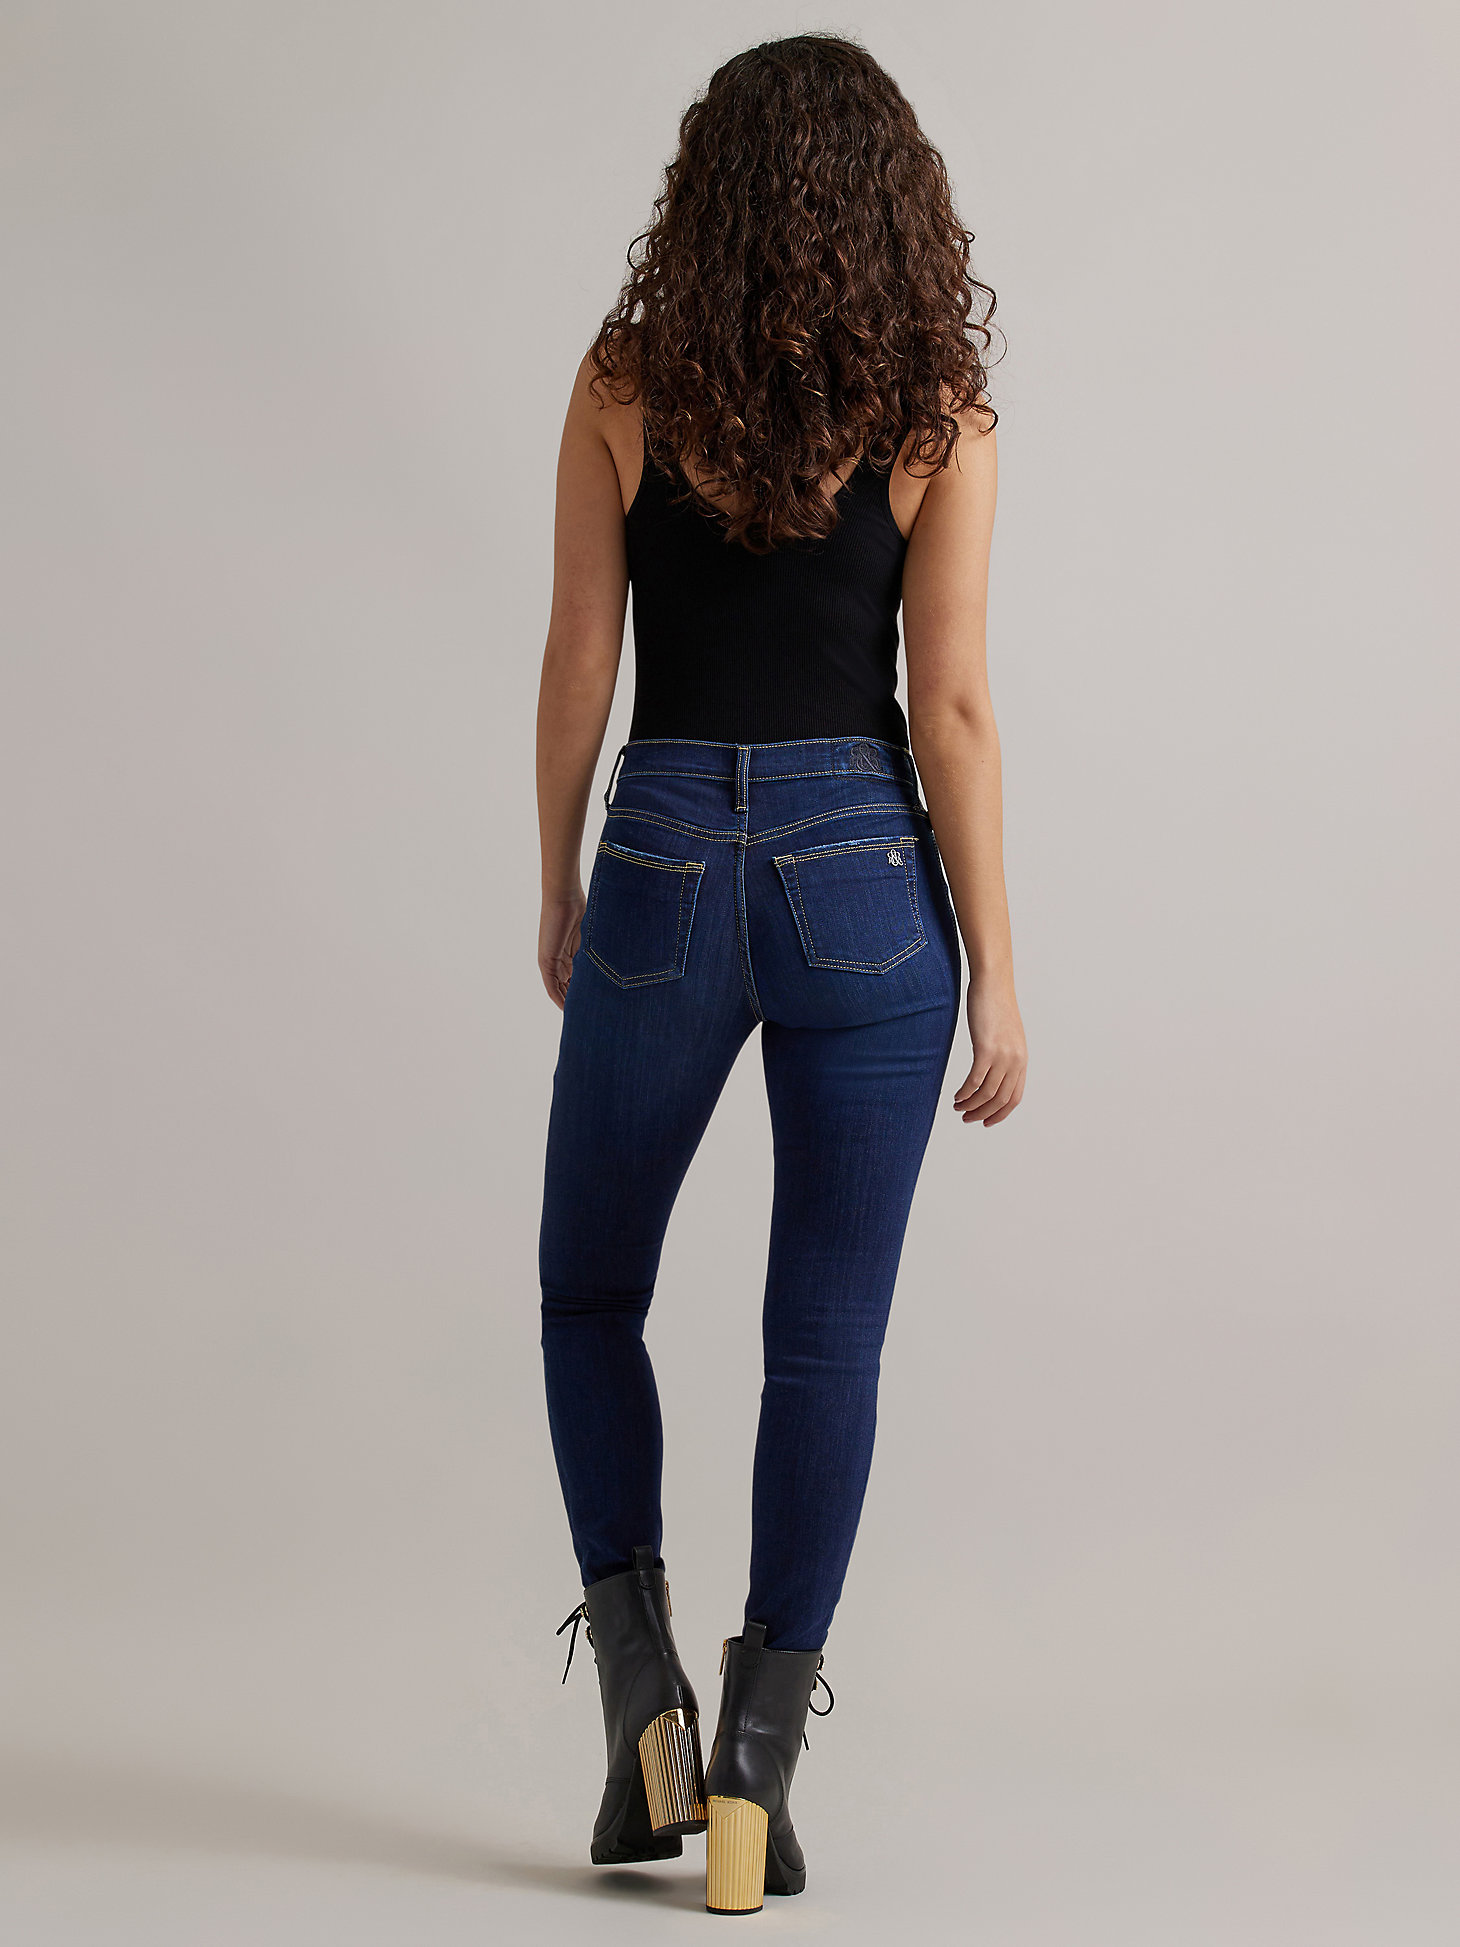 Women's Berlin Skinny Jean in Doctart alternative view 1